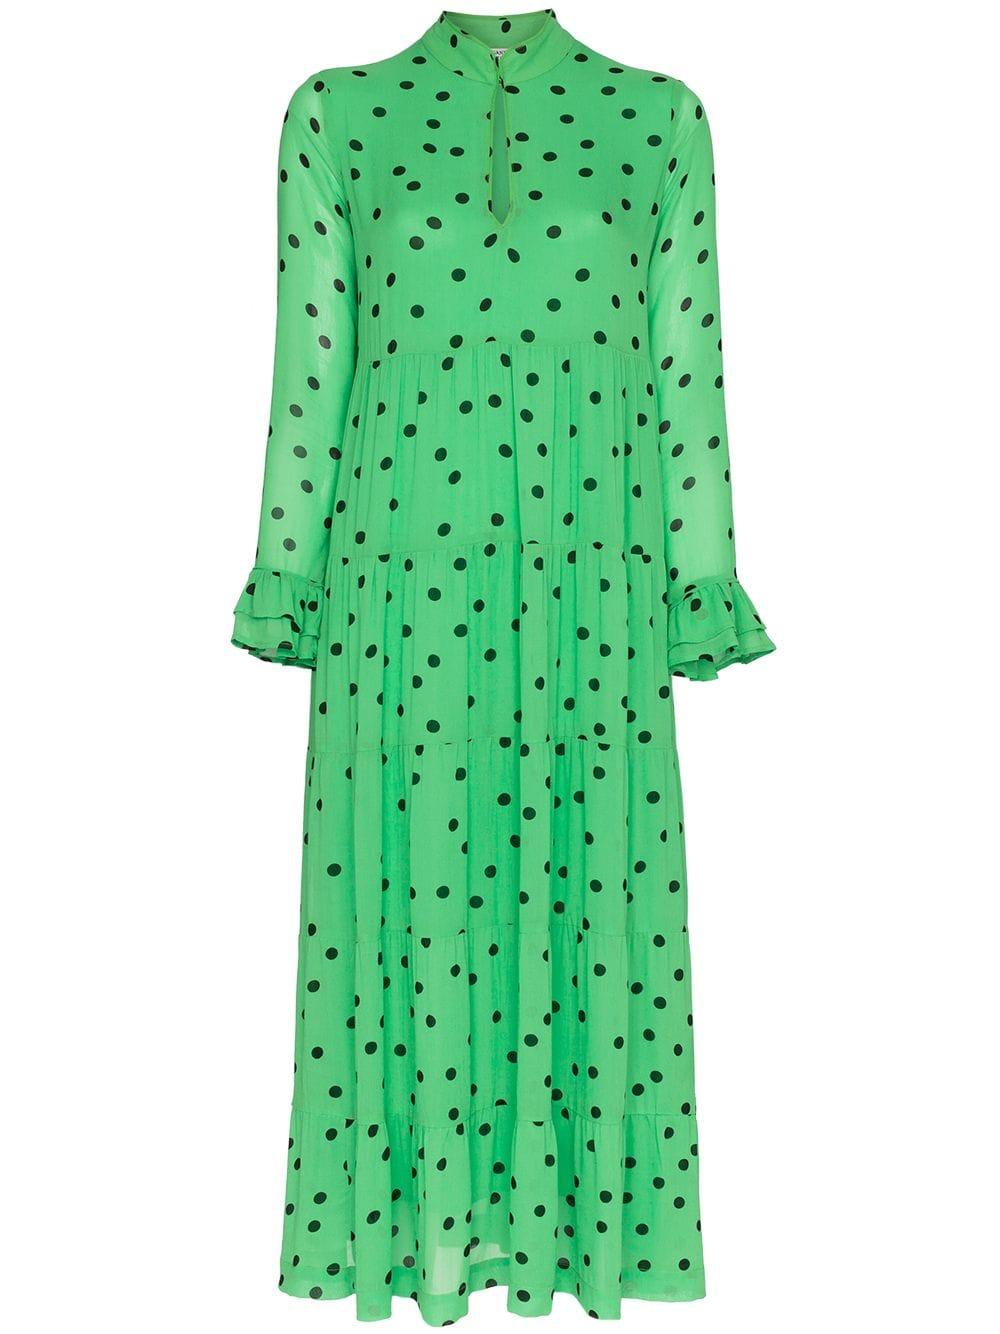 Ganni Polka Dot Maxi Dress in Green | Lyst Australia